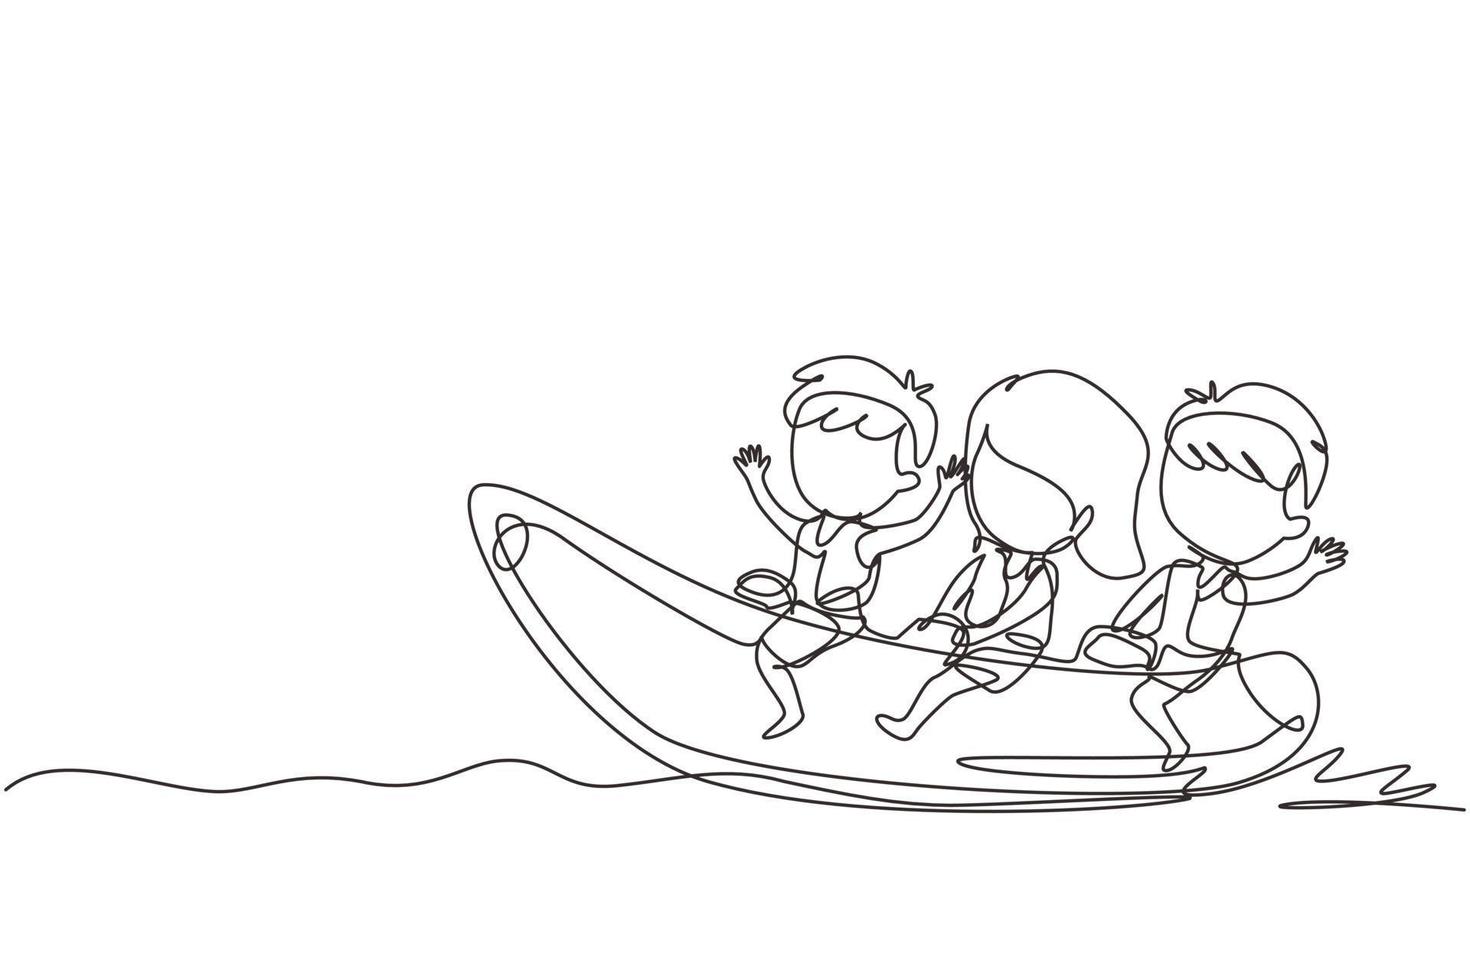 uma única linha desenhando crianças se divertindo no banana boat. crianças felizes com passeios de banana boat nas ondas da praia. conceito de esporte aquático de verão. ilustração em vetor gráfico de desenho de linha contínua moderna